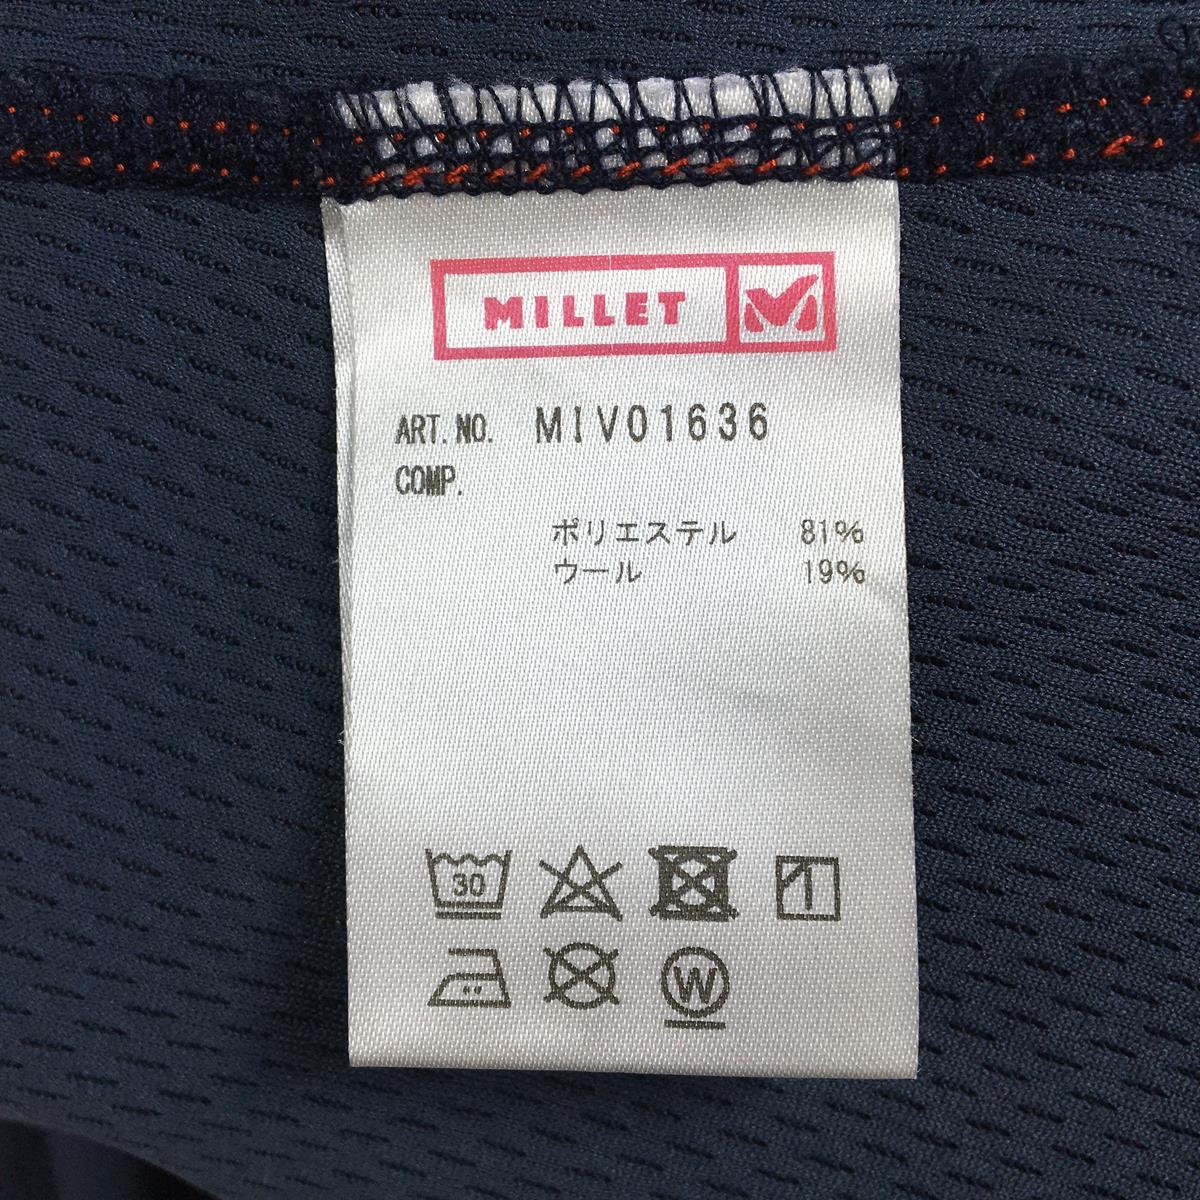 【WOMEN's L】 ミレー キャスター ウール クルー ロングスリーブ LD CASTOR WOOL CREW LS Tシャツ ロンT MILLET MIV01636 ネイビー系